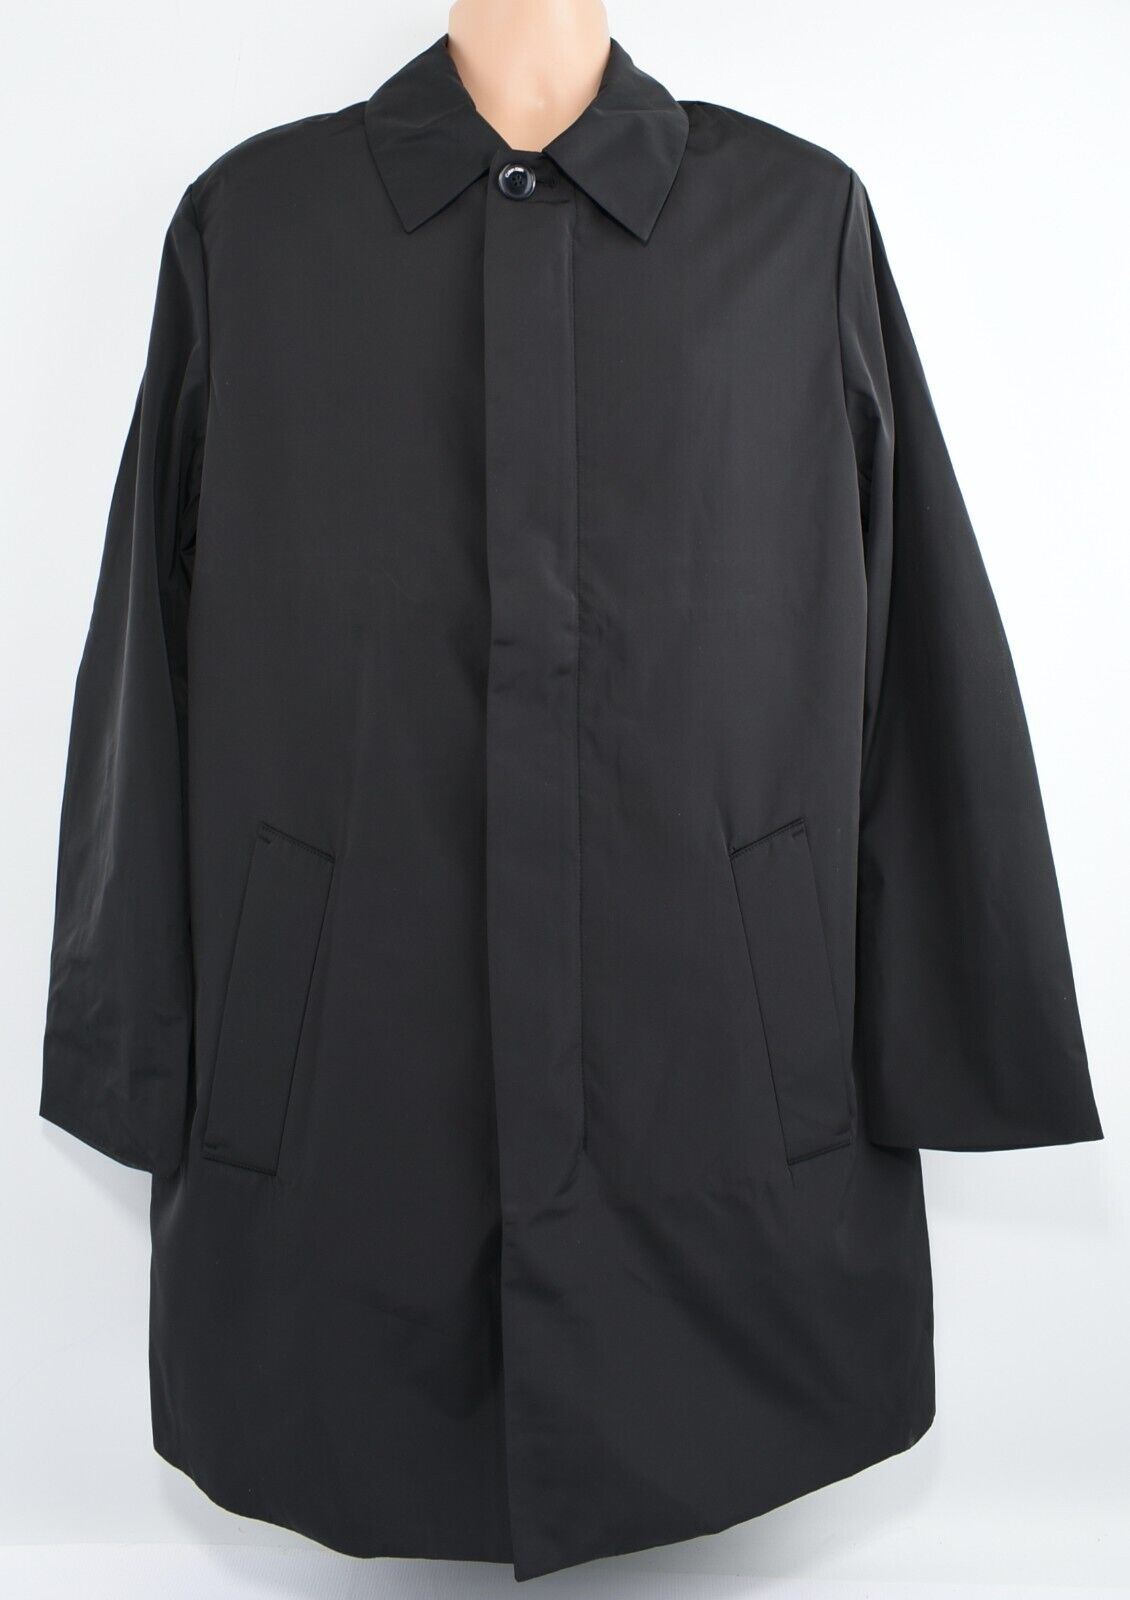 CALVIN KLEIN Men's Compact Jacket, Overcoat, Black, size 38